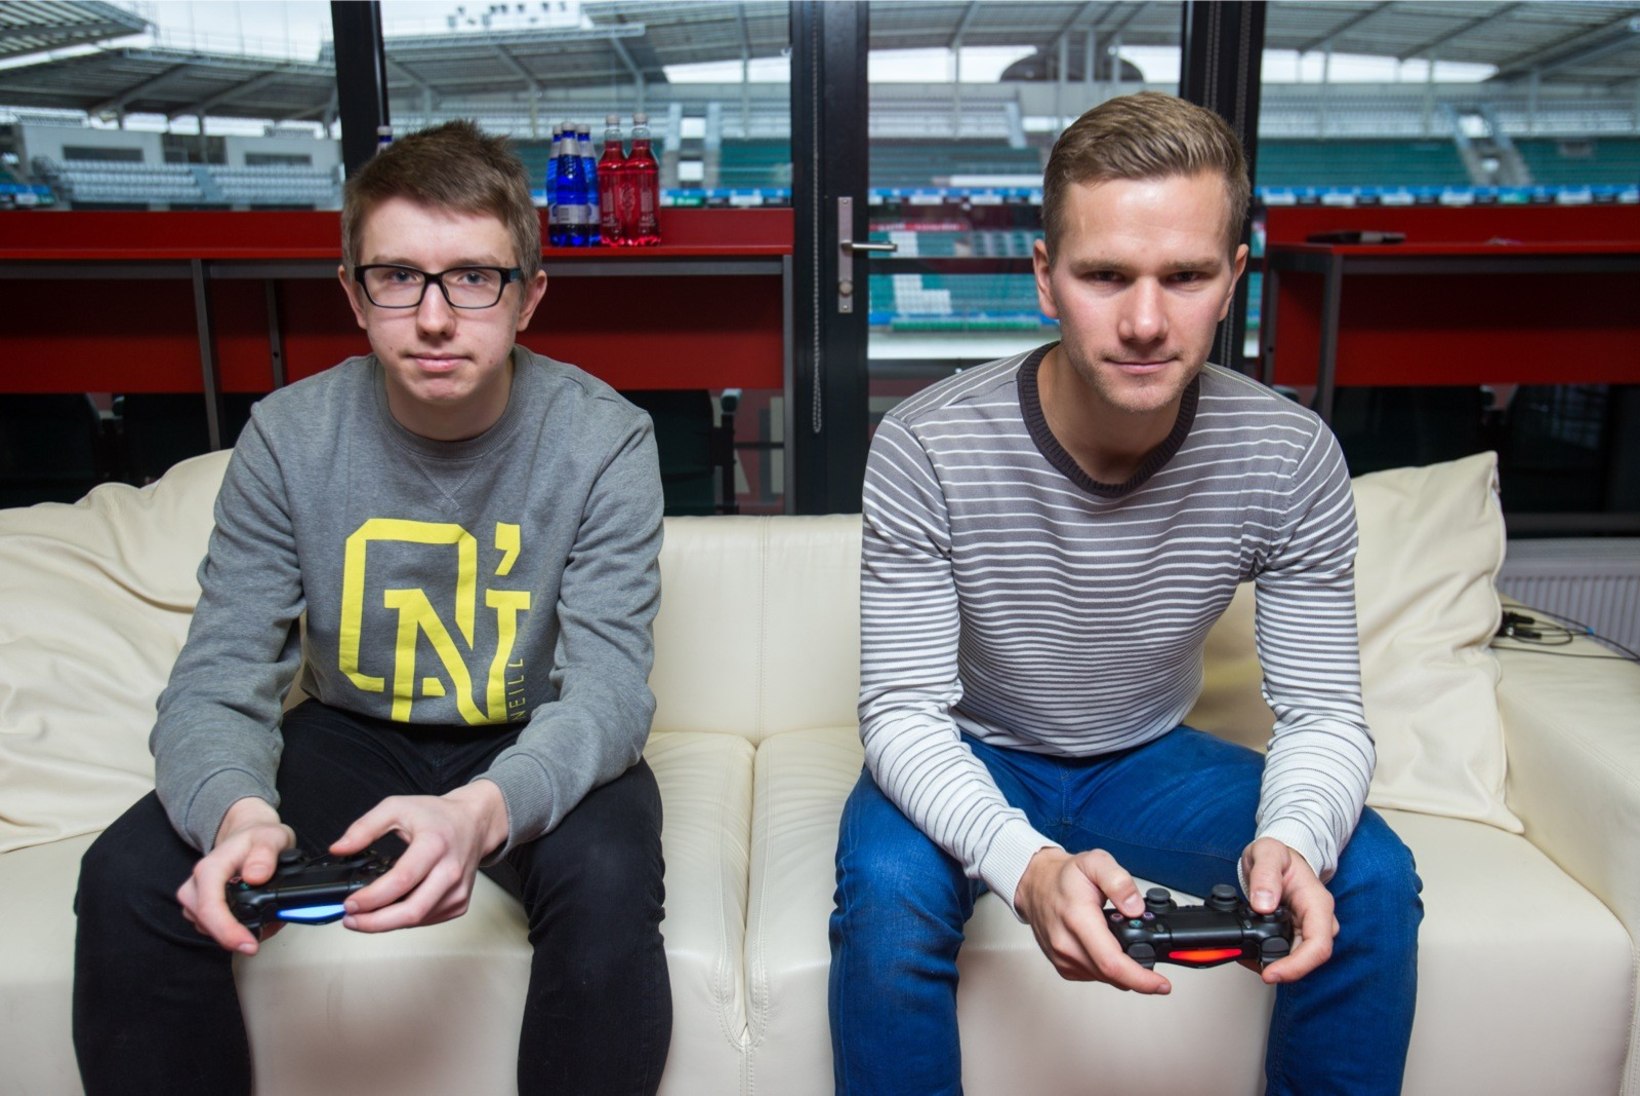 ÕHTULEHE VIDEOLAHING | KES VÕIDAB? Kas virtuaalses jalgpallis võidutseb e-sportlane või Eesti koondise jalgpallur?